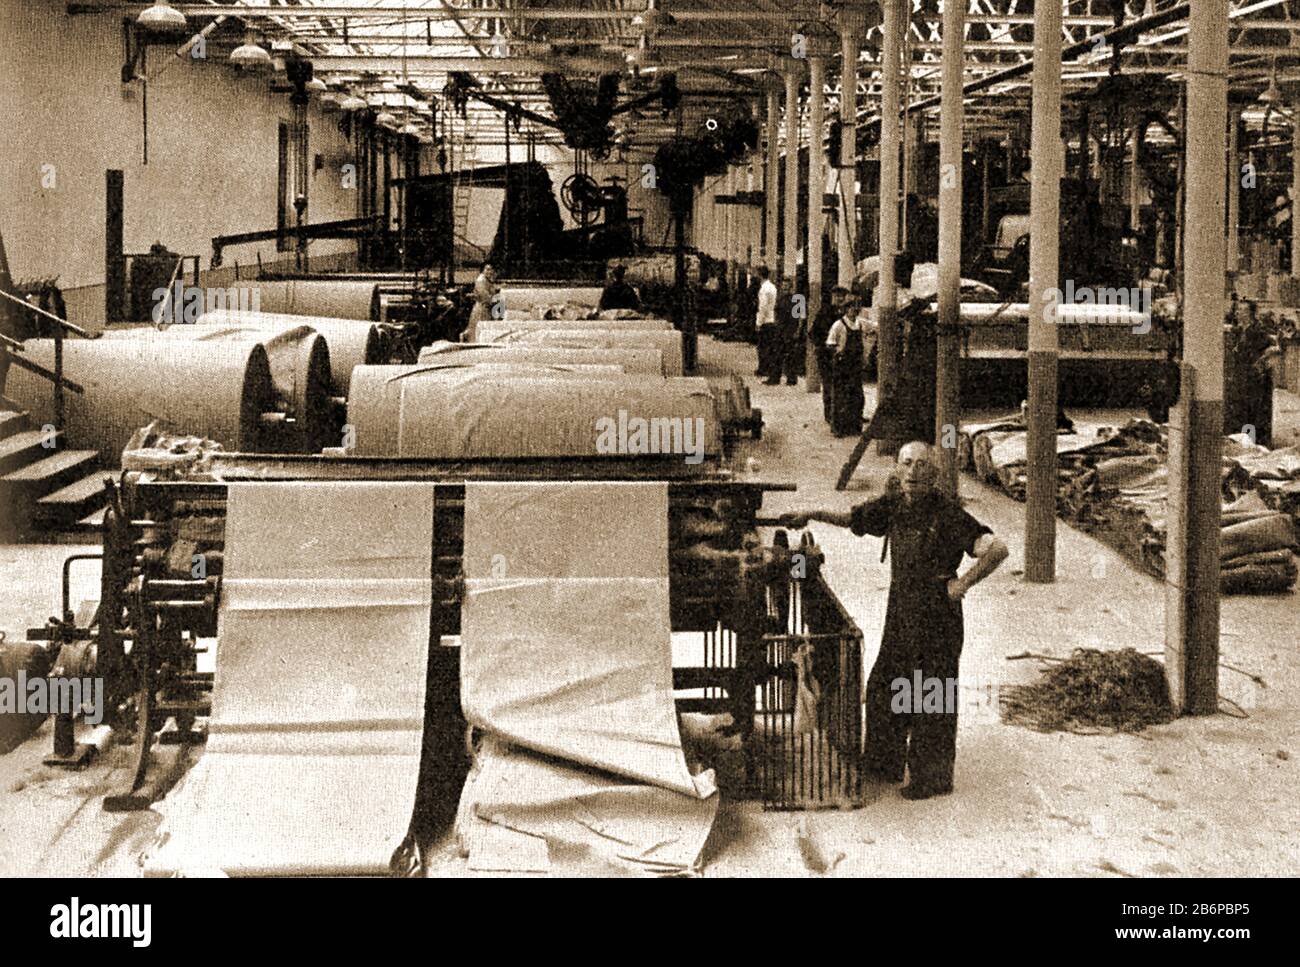 Una fotografia iniziale che mostra un lavoratore in una fabbrica di iuta a Dundee, in Scozia mettendo un panno di sacking attraverso una macchina di taglio. Nel corso della fine del 1800s, più della metà della forza lavoro di Dundee lavorò nel settore tessile (principalmente jute). La iuta era poco costosa e resistente all'usura ed era ideale per sacchi, borse, sacchi di sabbia, materiali di imballaggio e persino coperture del carrello (come quelli usati dai pionieri selvaggi dell'ovest). Durante la maggior parte del tempo, la maggior parte delle femmine ha lavorato nell'industria guadagnando un uomo di salario non poteva eguagliare, Di Conseguenza gli uomini sono rimasti a casa come 'casa-mariti' e sono stati conosciuti localmente come bollitore bilers (bollitore caldaie). Foto Stock